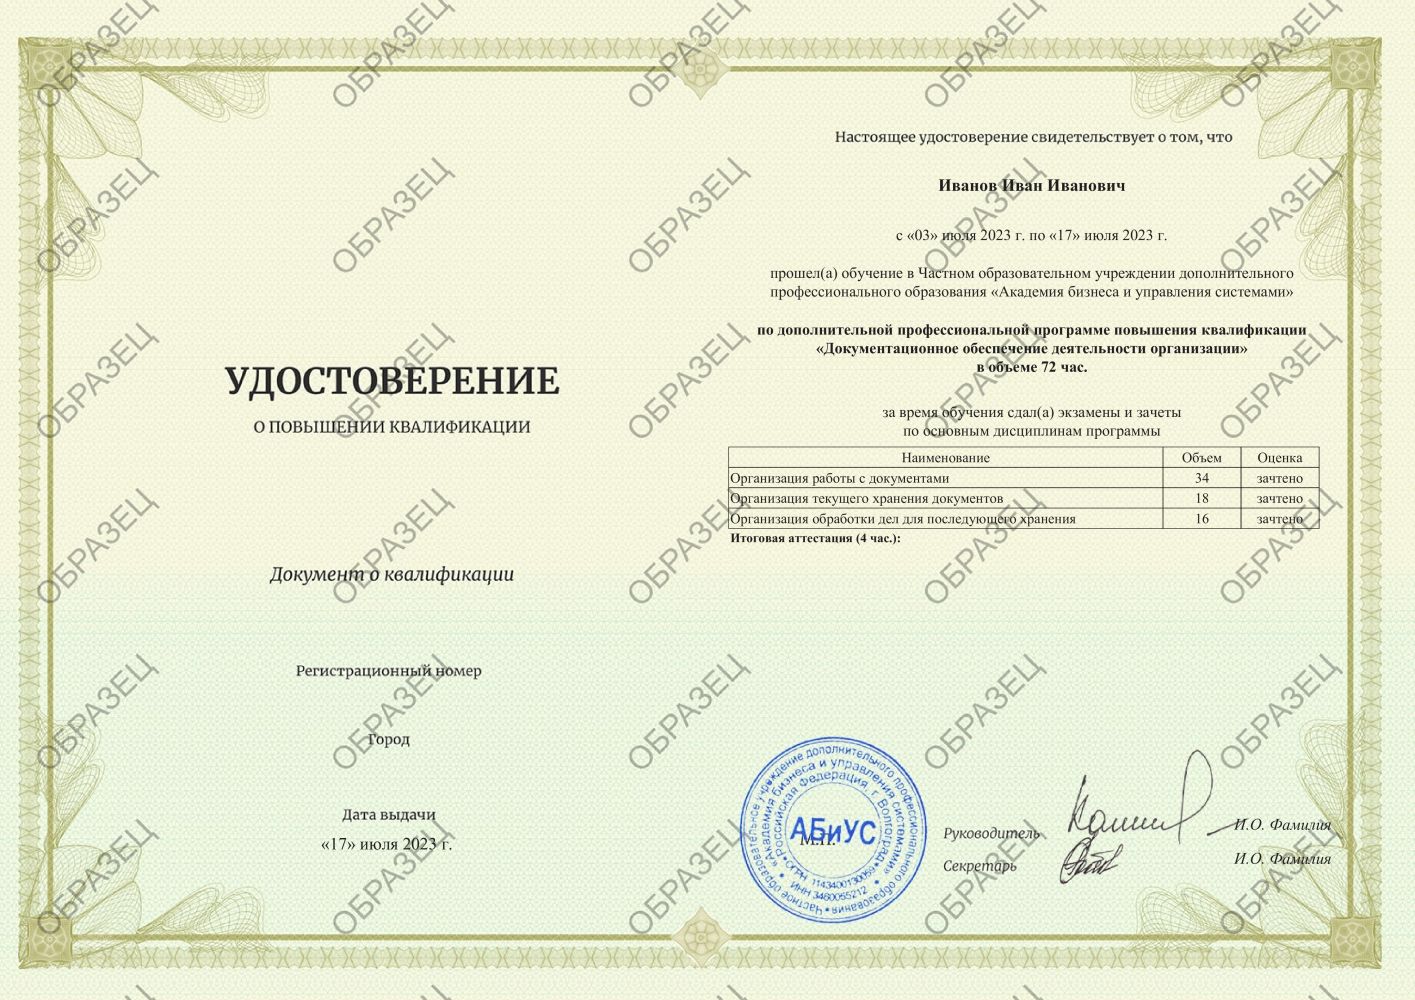 Удостоверение Документационное обеспечение деятельности организации 72 часа 3438 руб.